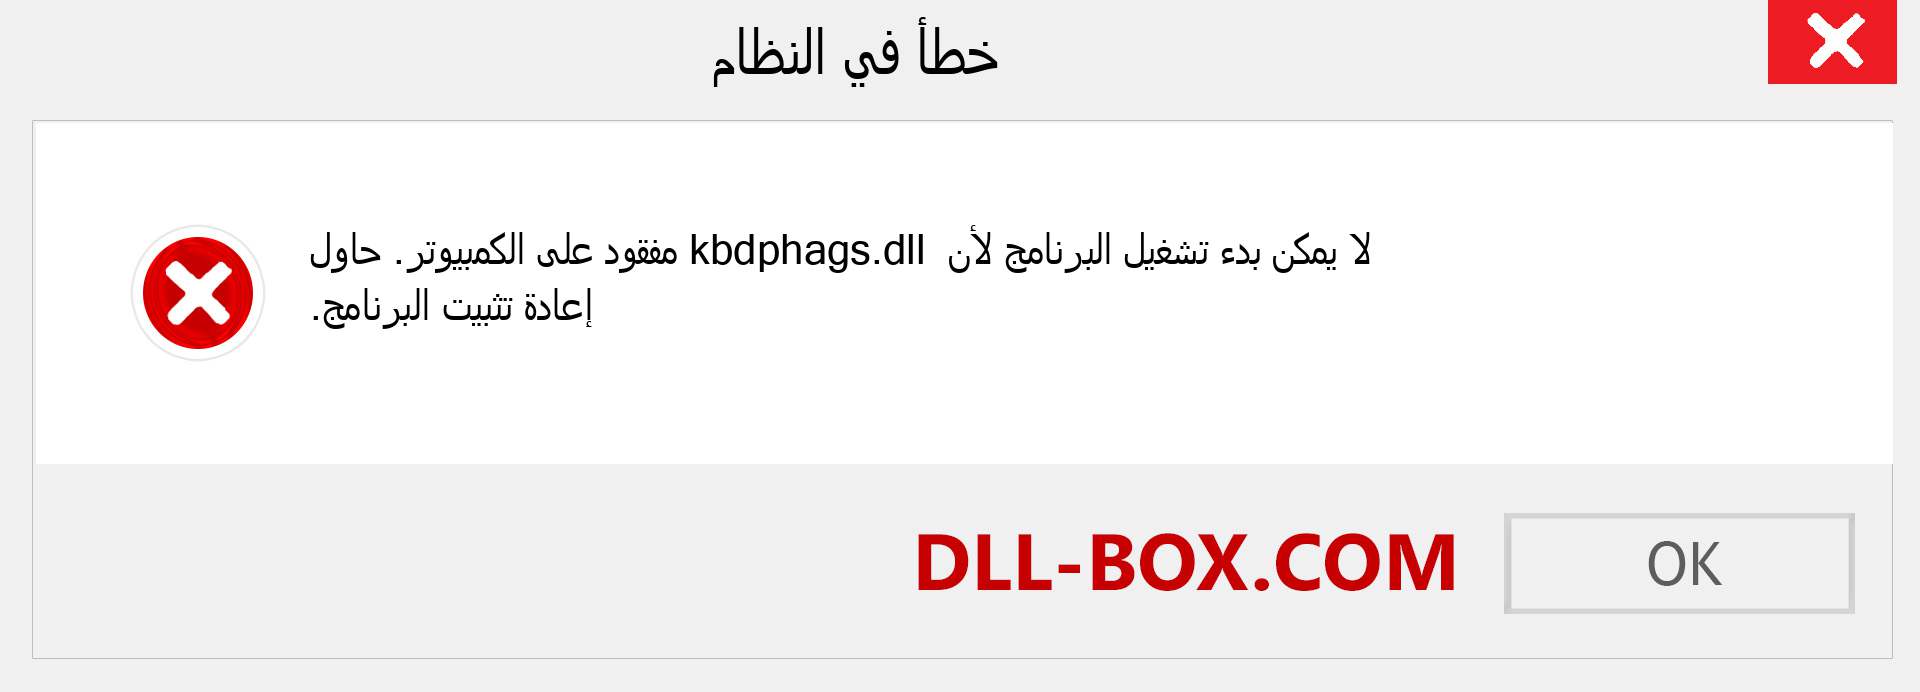 ملف kbdphags.dll مفقود ؟. التنزيل لنظام التشغيل Windows 7 و 8 و 10 - إصلاح خطأ kbdphags dll المفقود على Windows والصور والصور